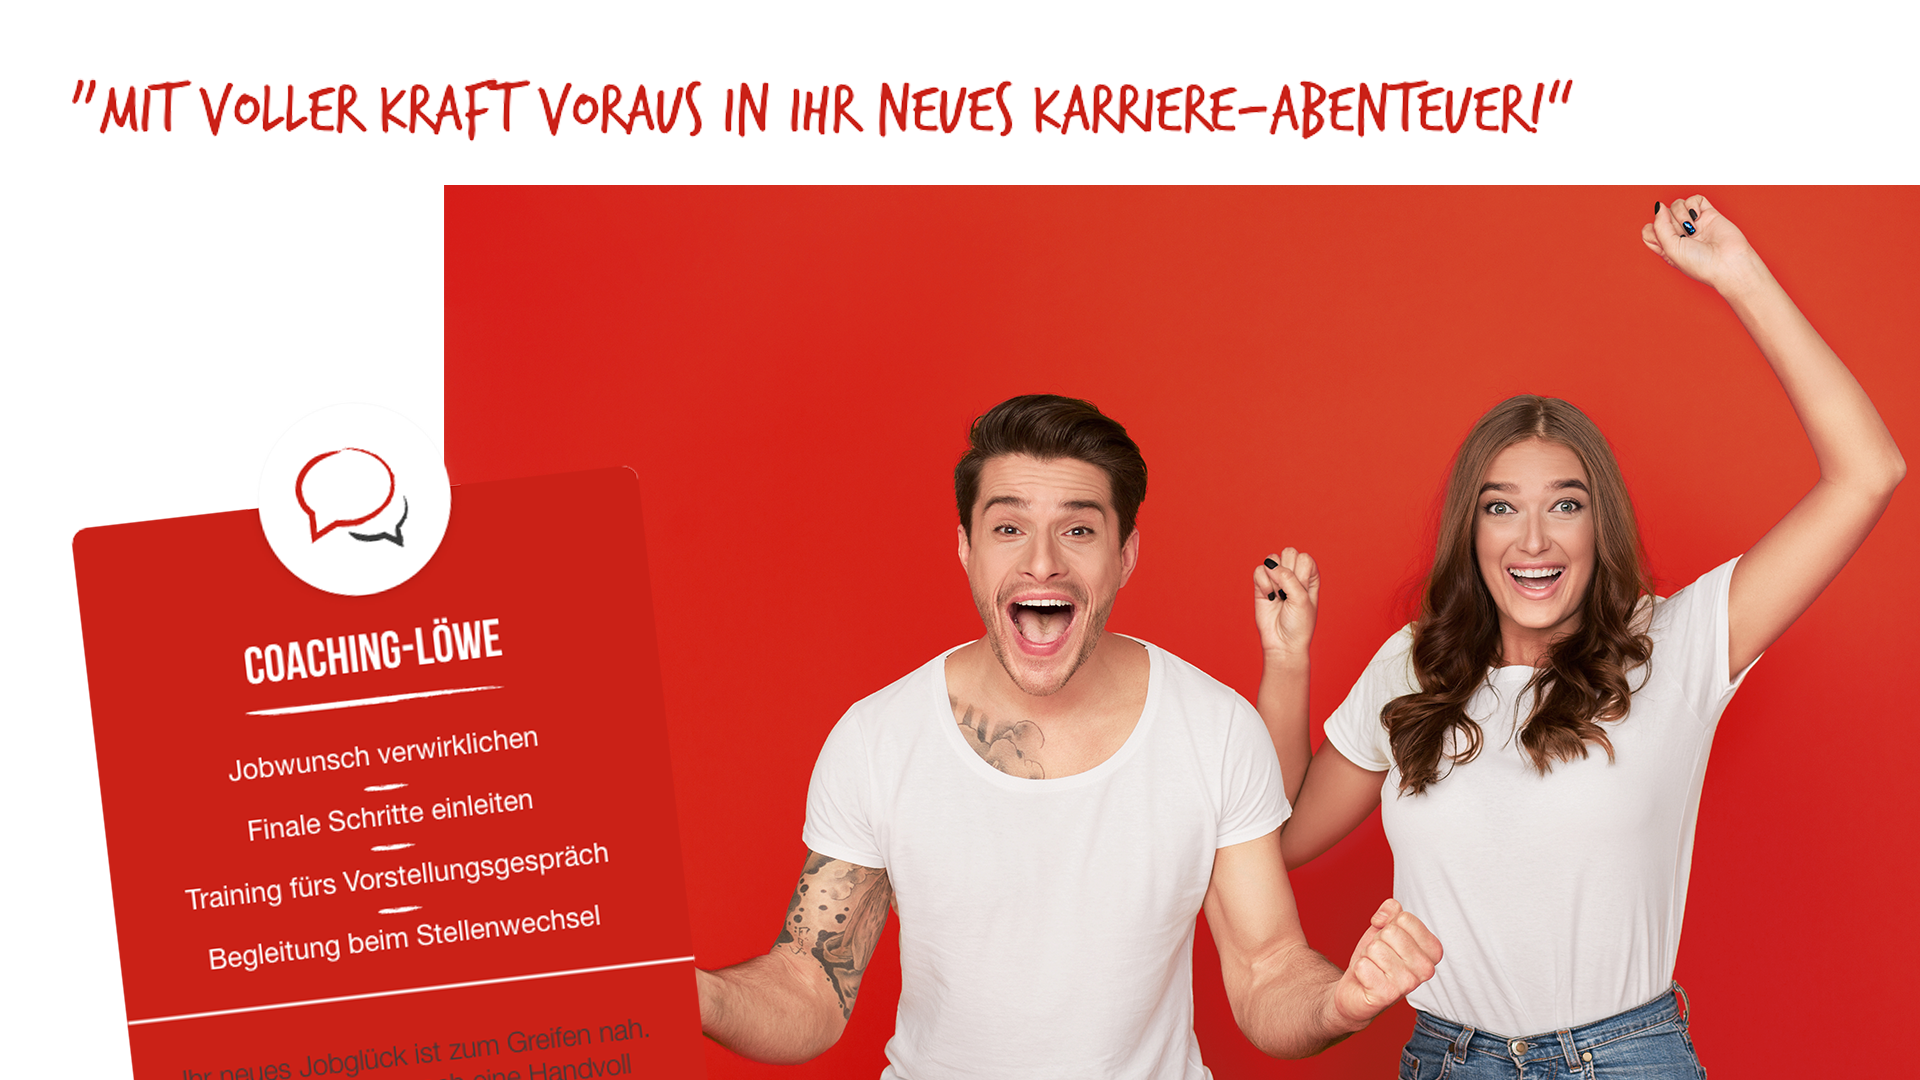 Scribble Werbeagentur nah bei Köln zeigt ein Paar, das mit voller Kraft In ein neues Karriere-Abenteuer startet.